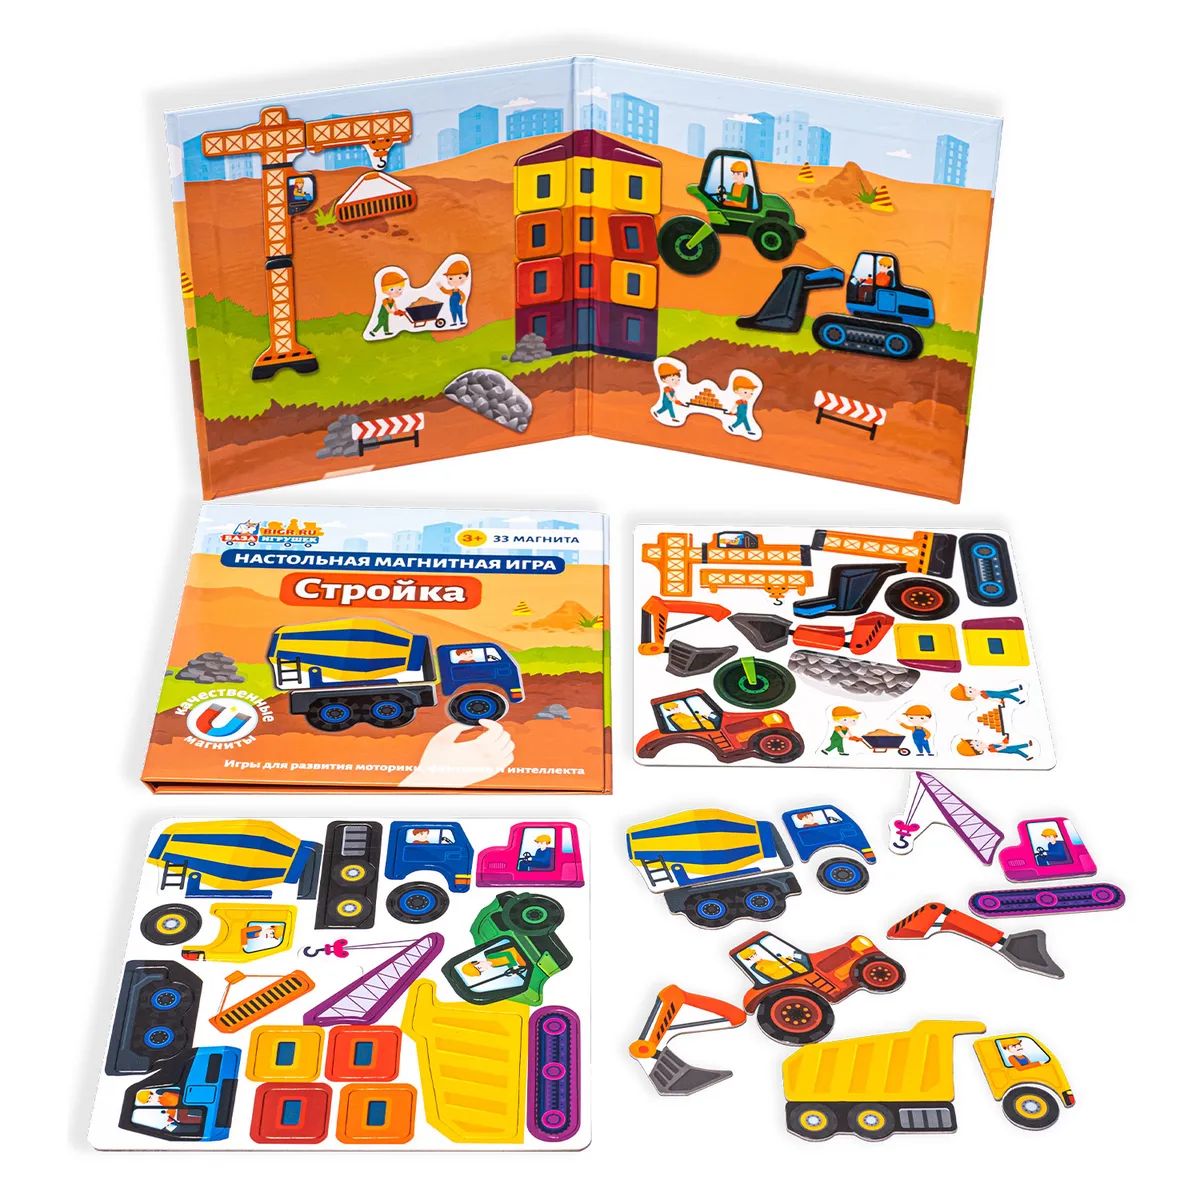 Магнитная игра для детей Бигр Стройка мини, УД62 развивающая магнитная игра банда умников ум074 где ёж для детей от 3 лет